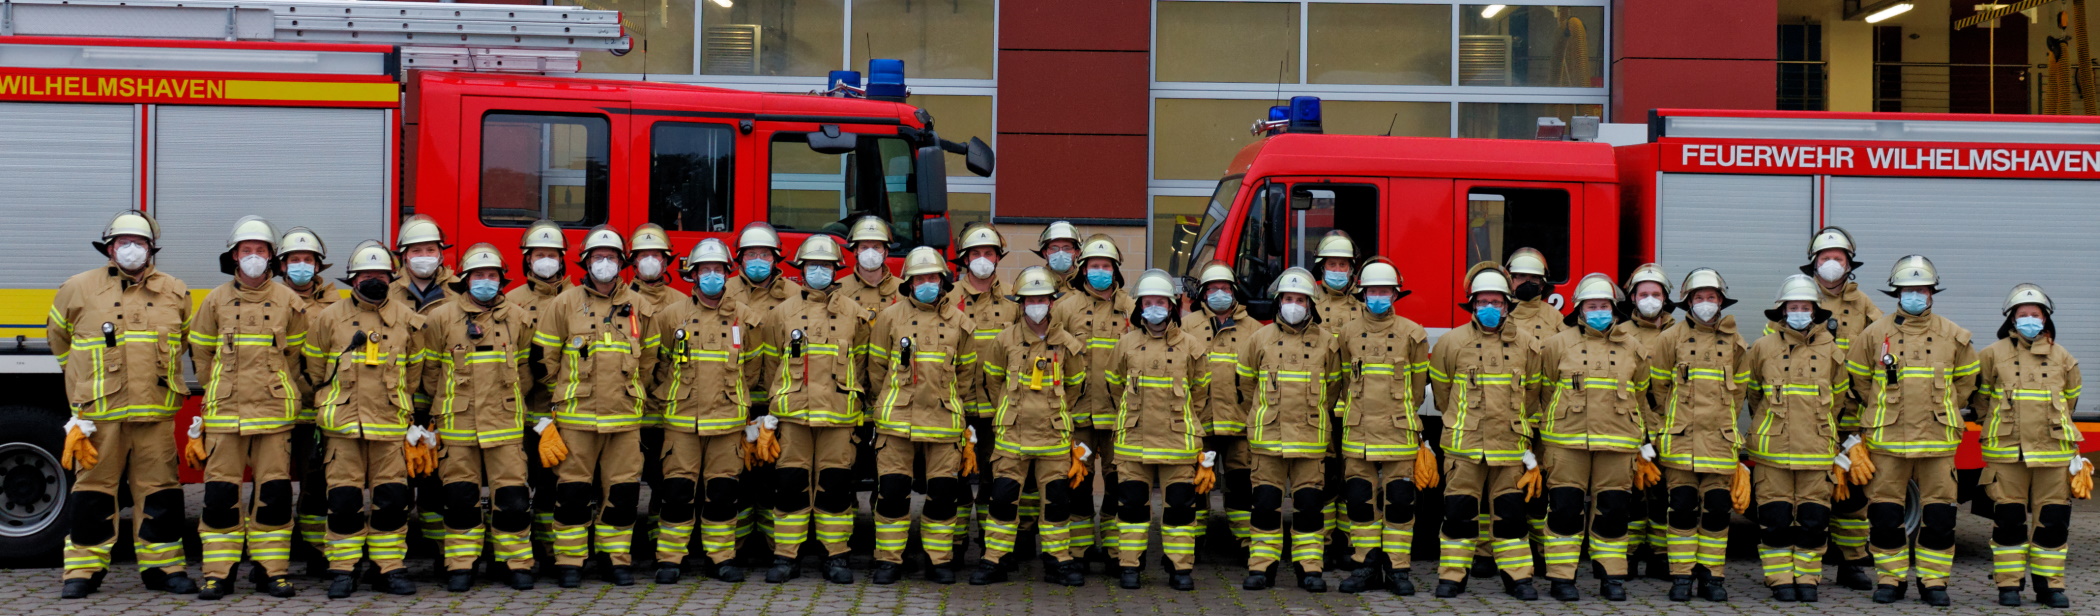 Freiwillige Feuerwehr Wilhelmshaven - Ortsfeuerwehr Rüstringen